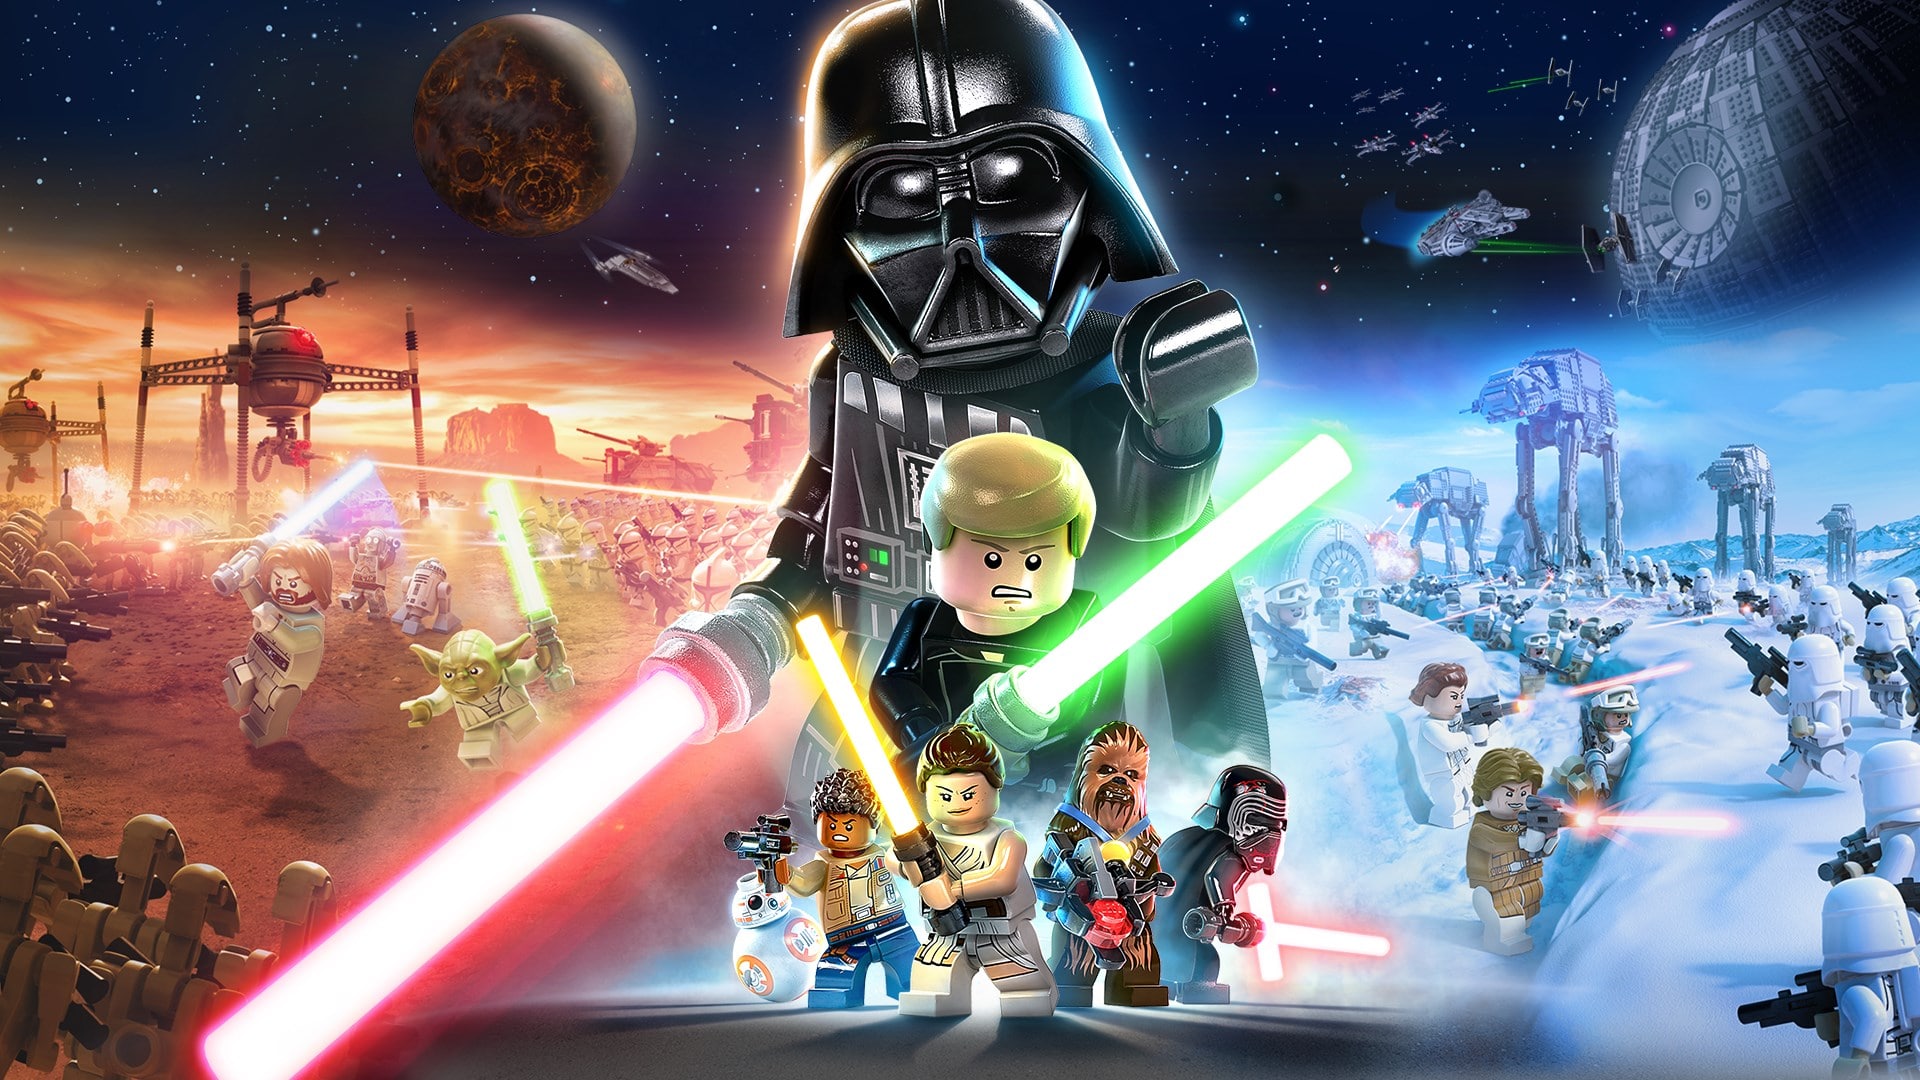 Lego star wars 6